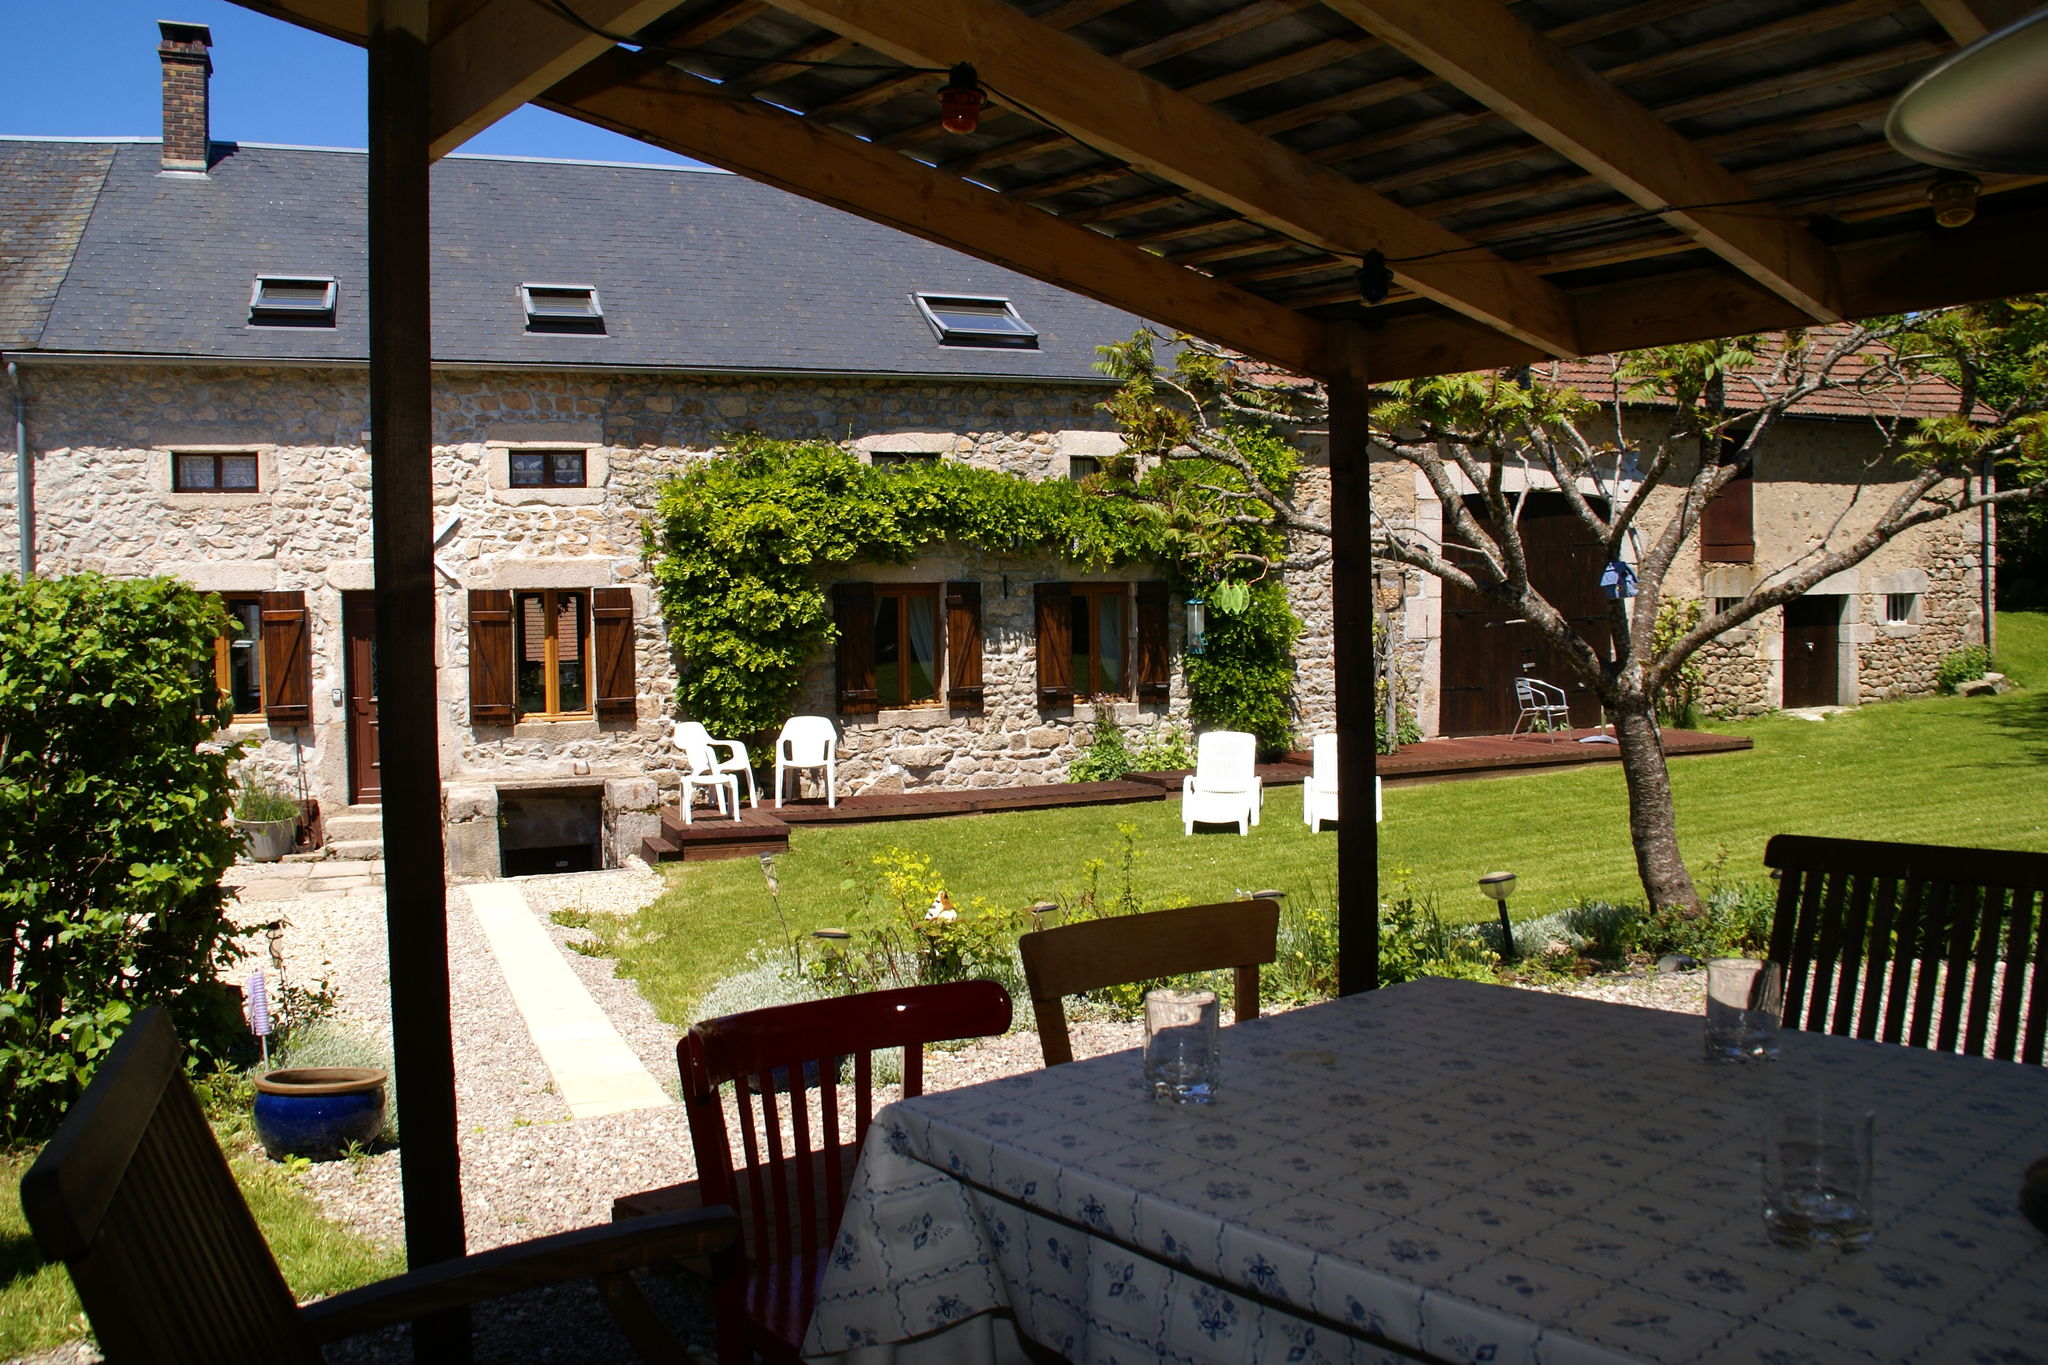 Vrijstaand vakantiehuis met grote tuin en overdekt terras. Nabij Dun-les-Places.